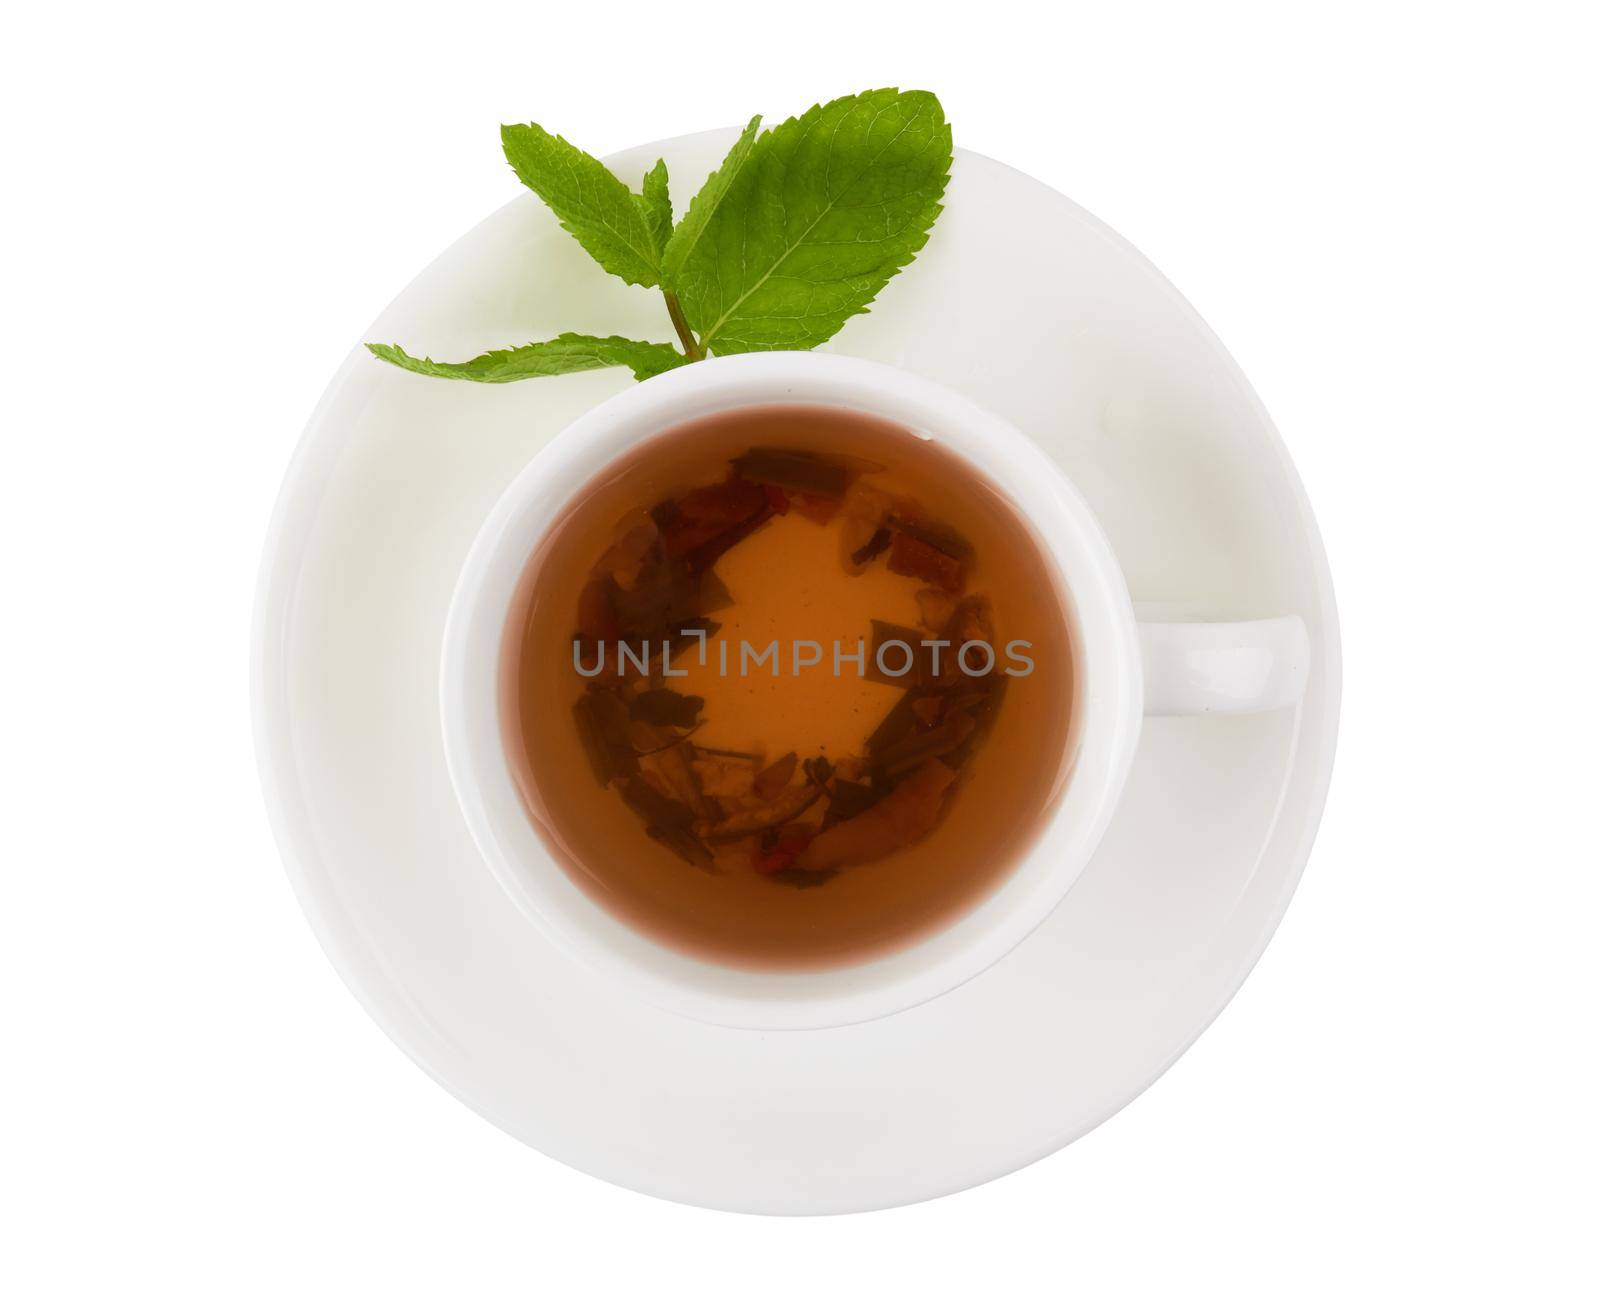 Herbal tea with berries by pioneer111